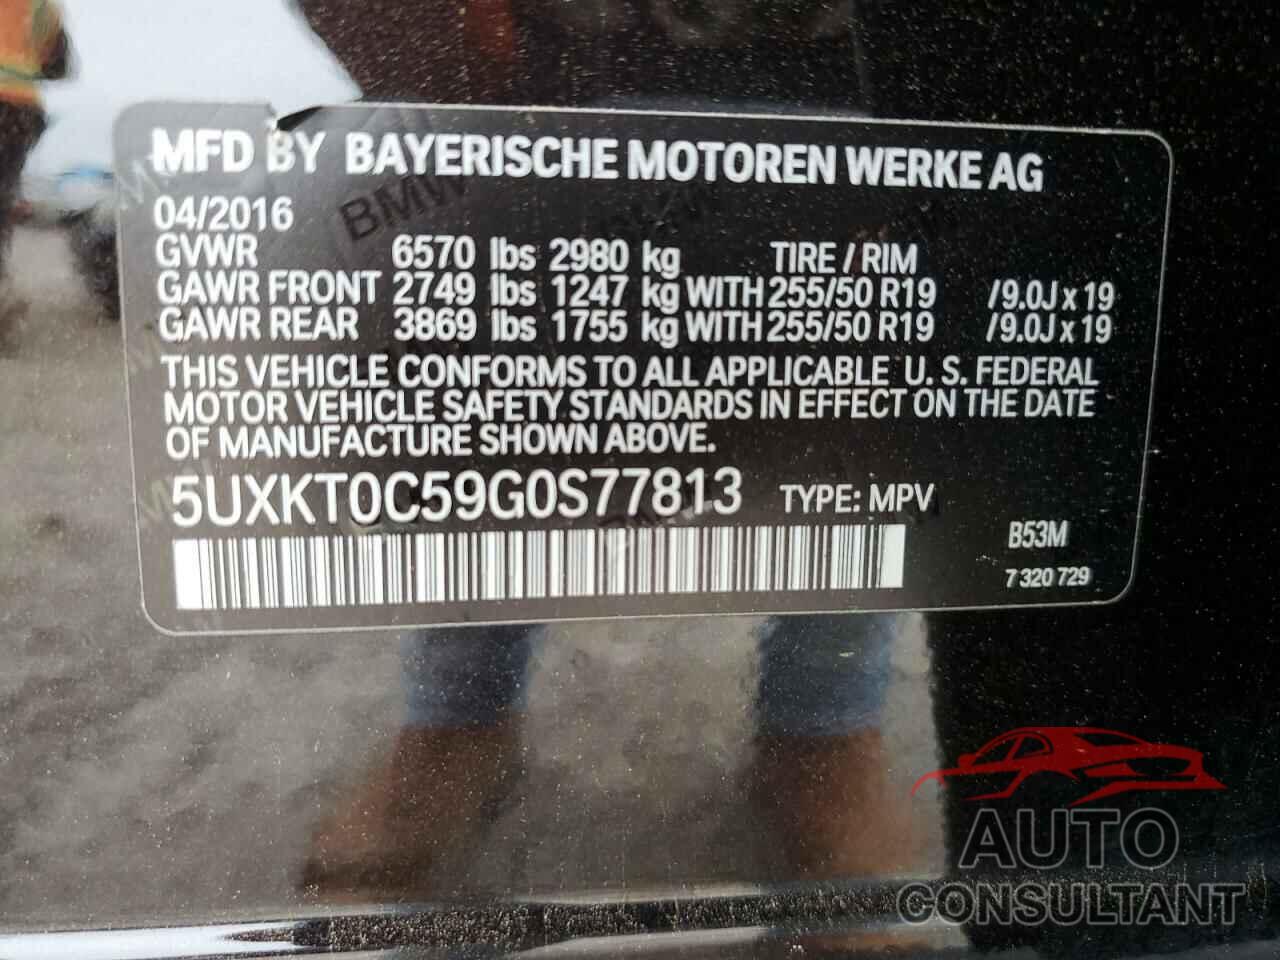 BMW X5 2016 - 5UXKT0C59G0S77813